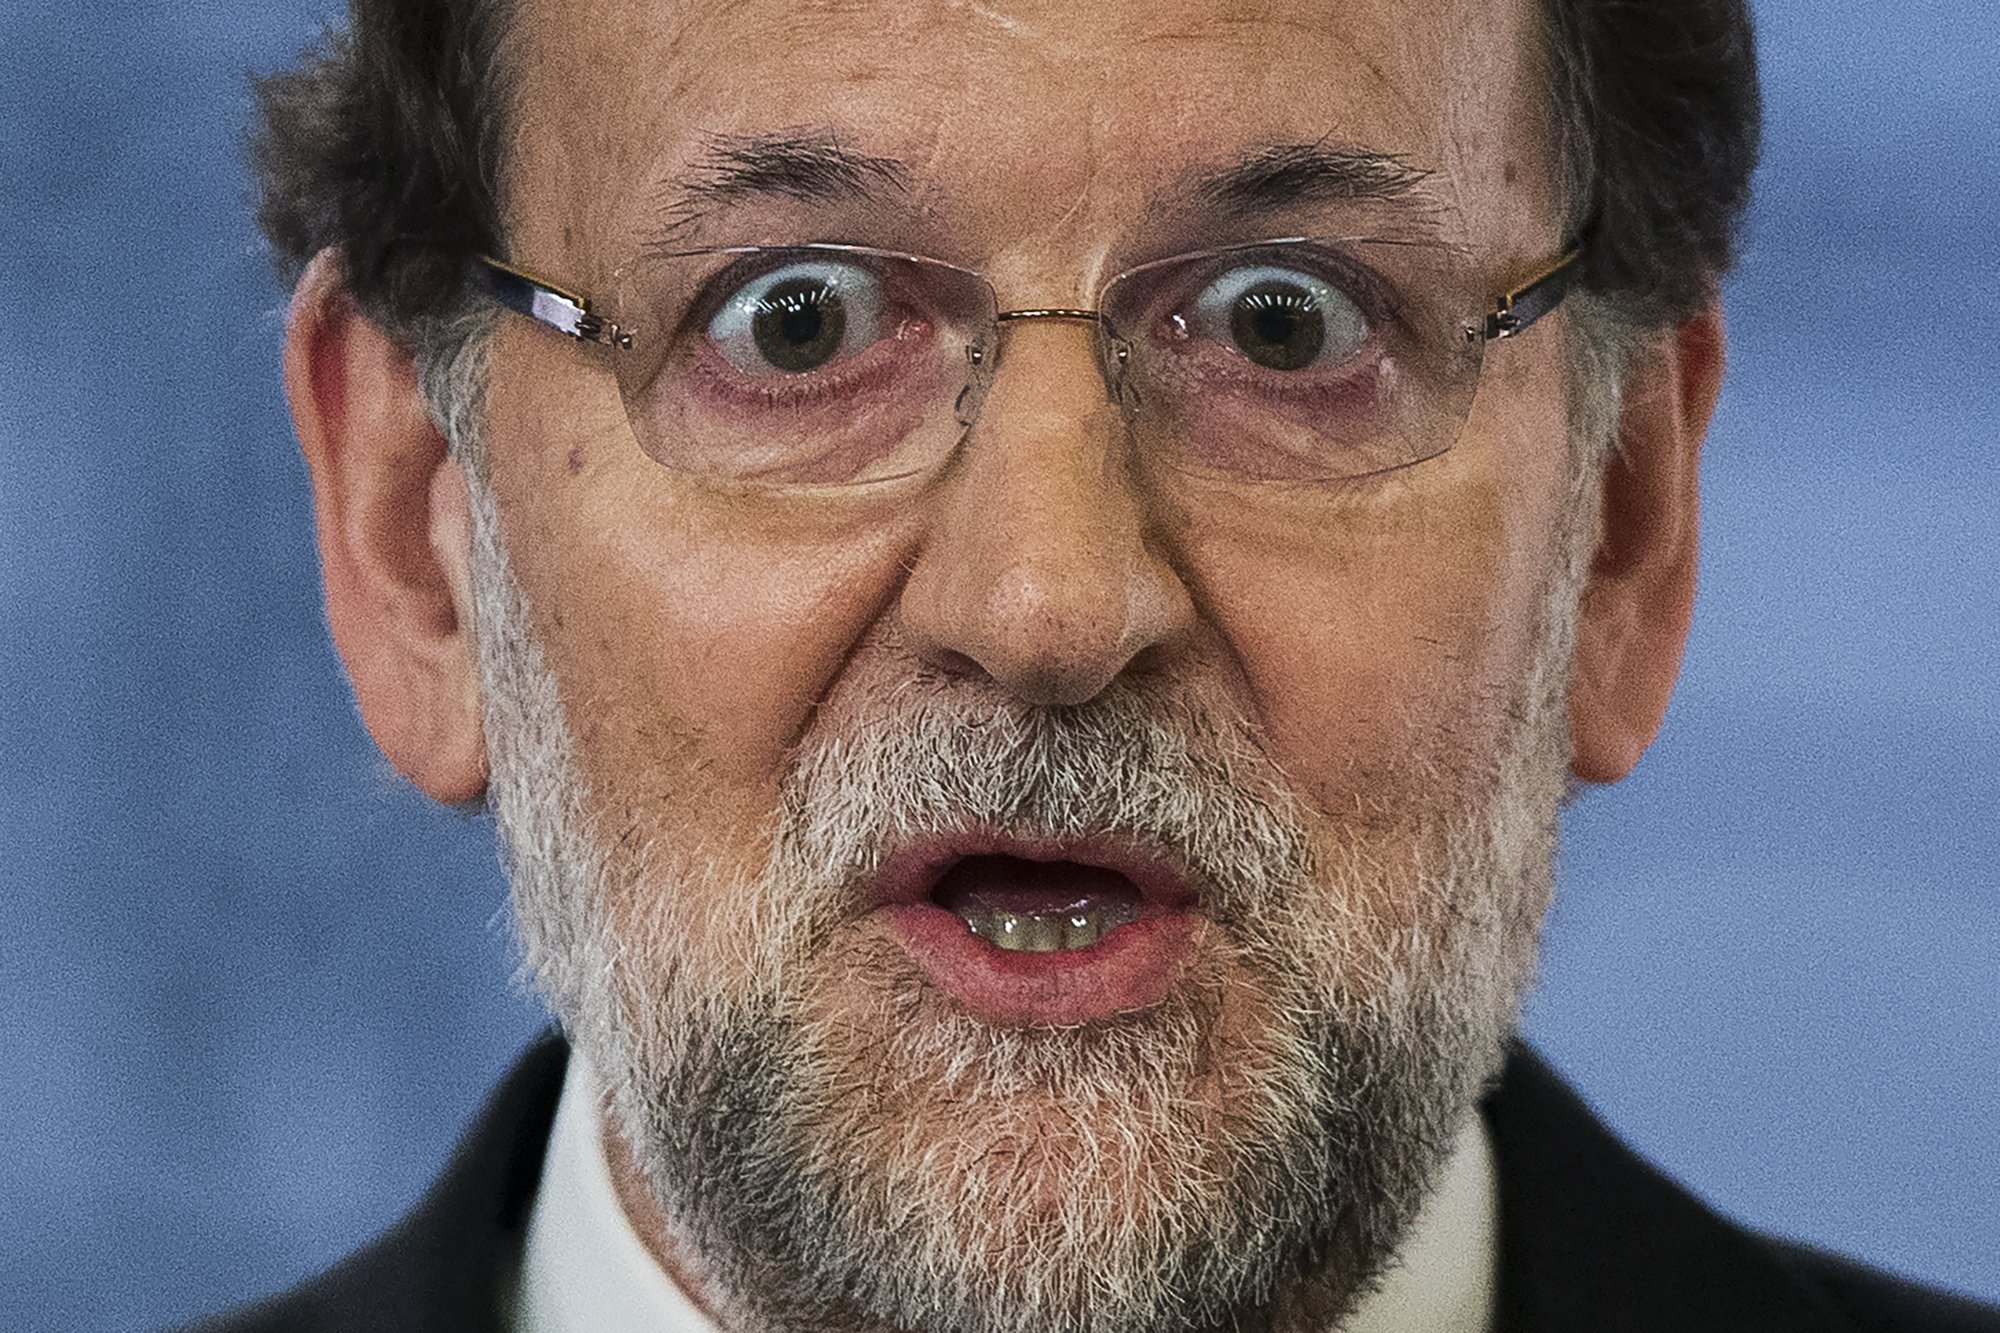 Rajoy gafapasta: el nou i increïble look de Mariano per semblar menys caspós